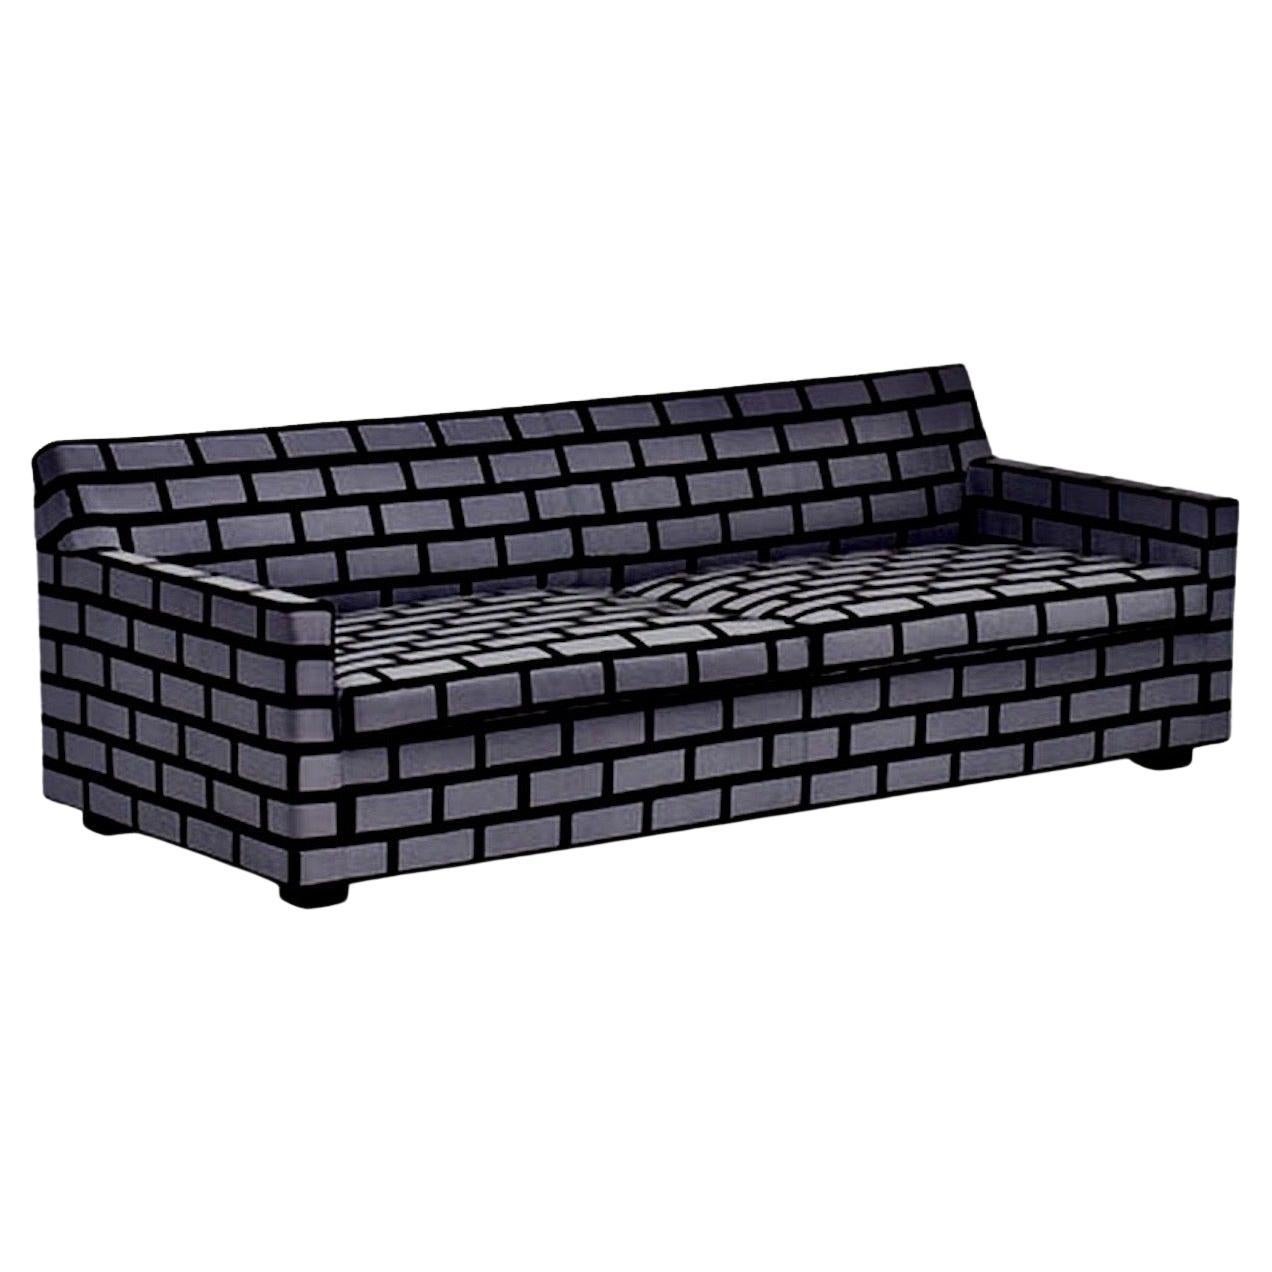 Gray Brick & Mortar Sofa, Rich Woods & Seb Wrong, Established & Sons, UK, 2009. Un design postmoderne emblématique. Produit pour une courte période en 2009-2010. Fabriqué en Angleterre.
Mesures : 27 H × 80 W × 38 D in.  Canapé Bricks & Mortar Salone